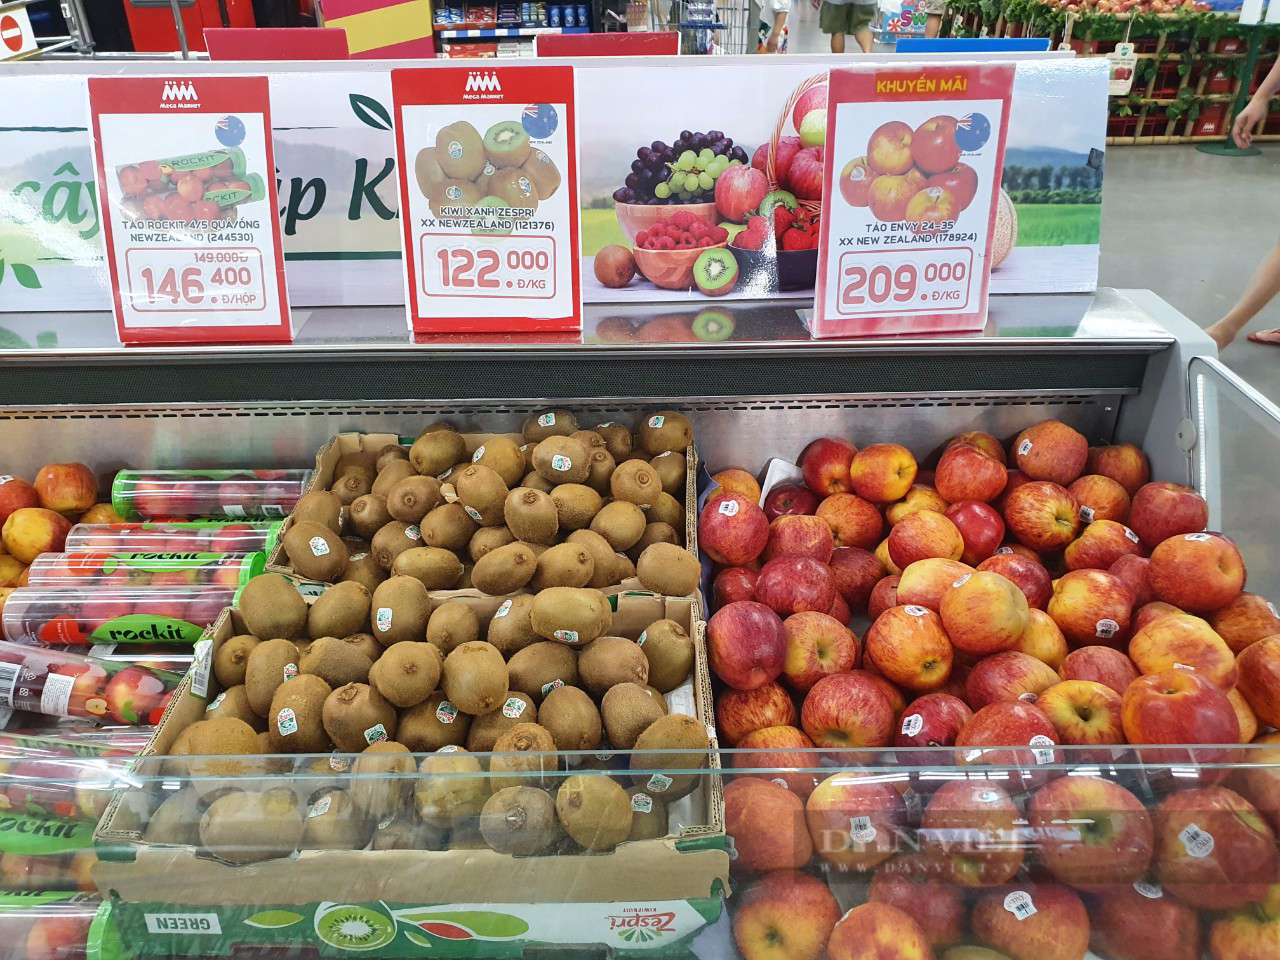 Trái cây nhập khẩu giá rẻ, táo chỉ từ 30.000 đồng/kg tràn ngập siêu thị - Ảnh 3.